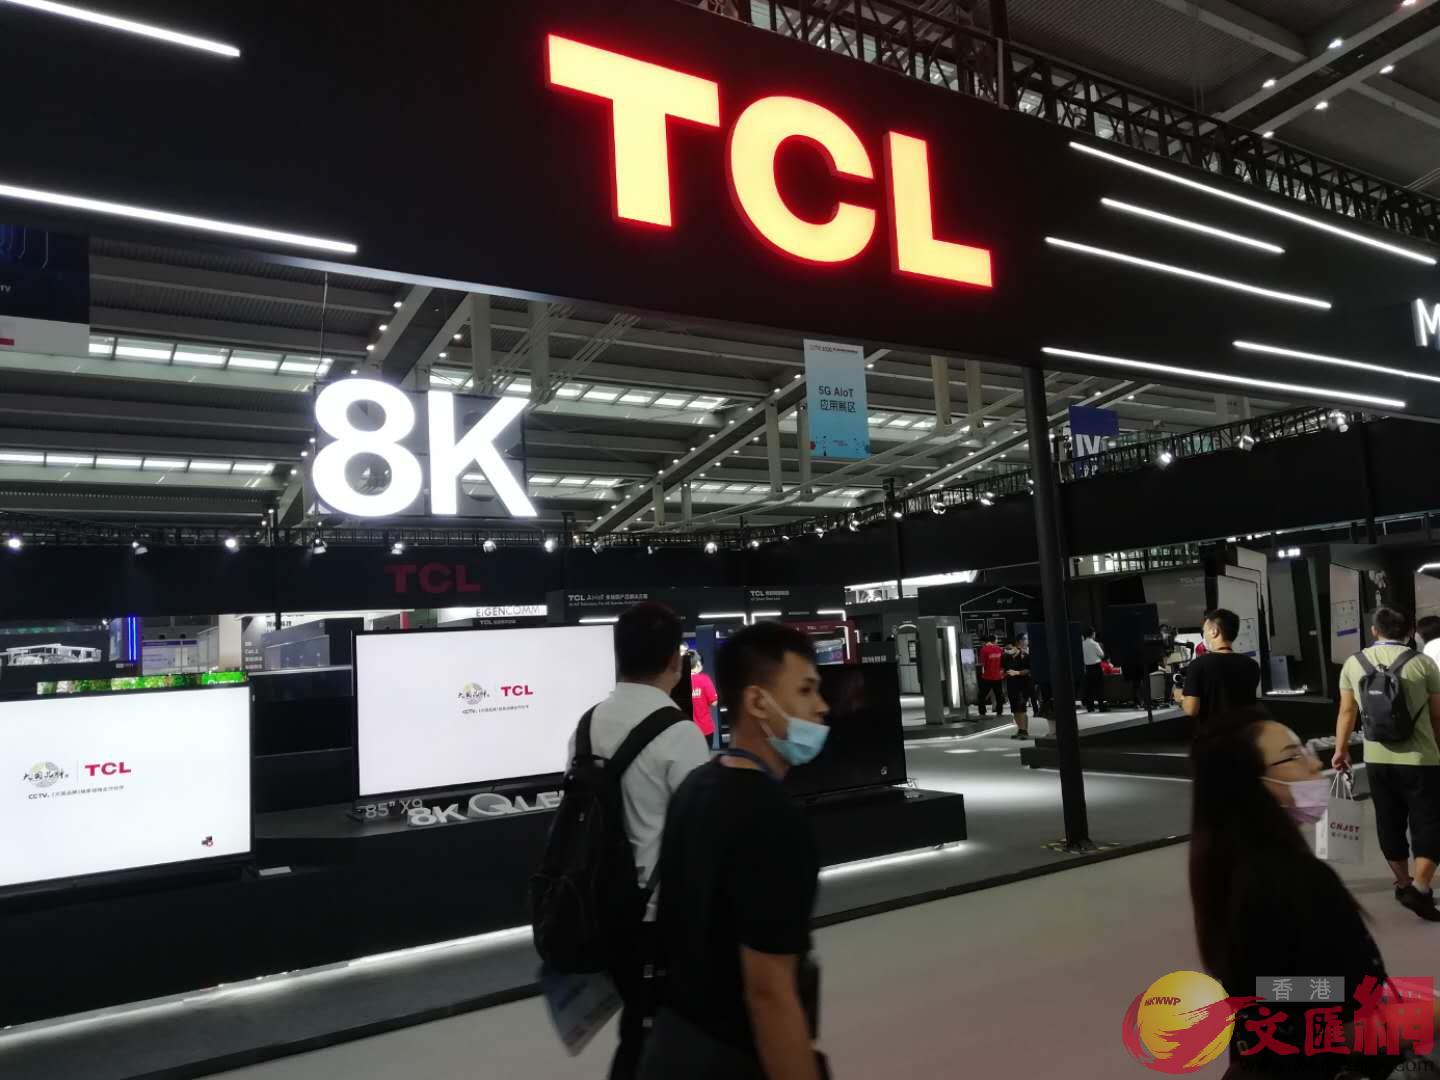  今年電博會吸引了TCLB創維等彩電商家參加 C記者 李昌鴻 攝